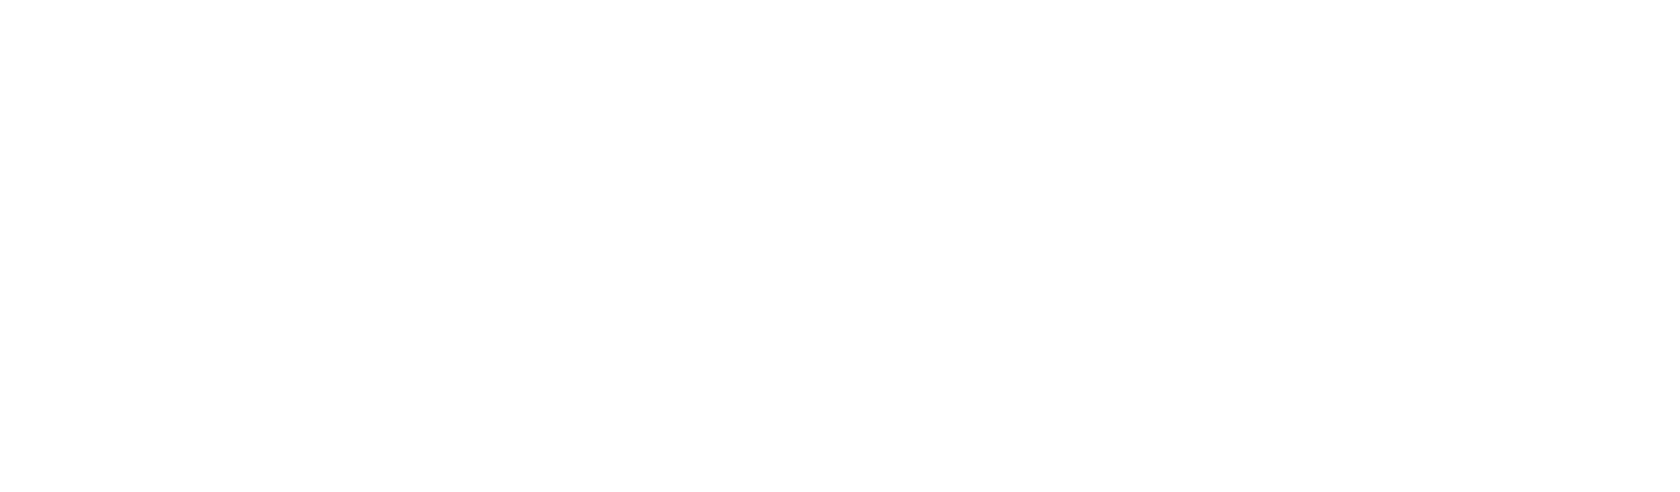 Торцевая заглушка Flexy TOREC SVET 30 для профилей Flexy: размер, вид, применение, способ монтажа в Москве, СПБ и России